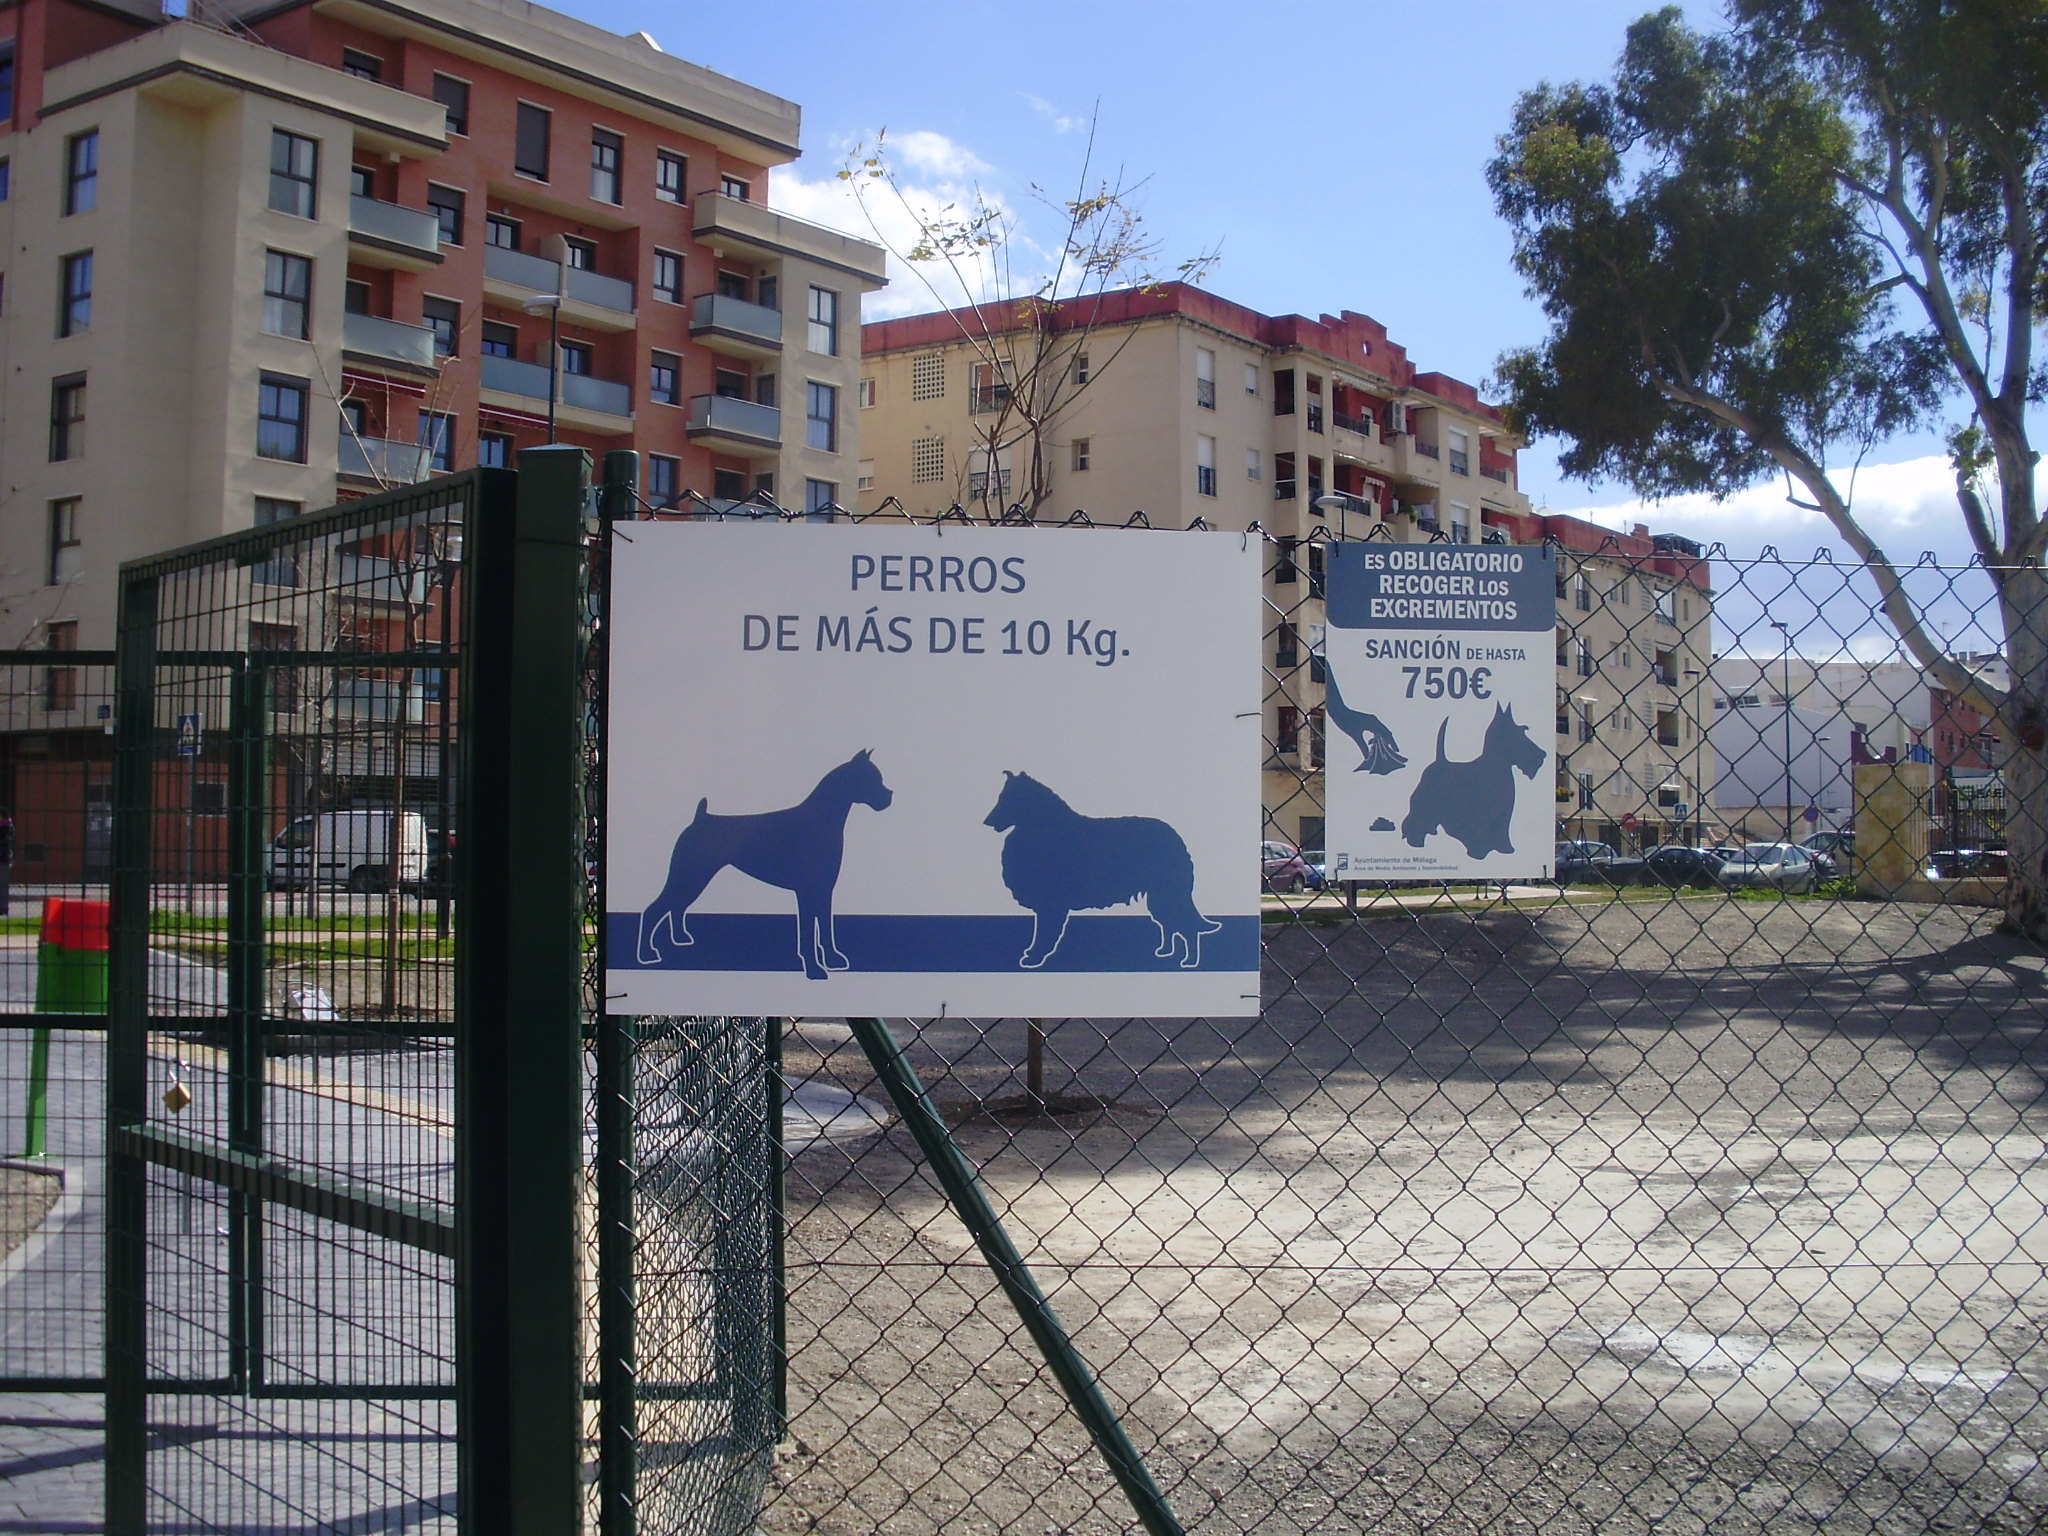 Parque para perros grandes